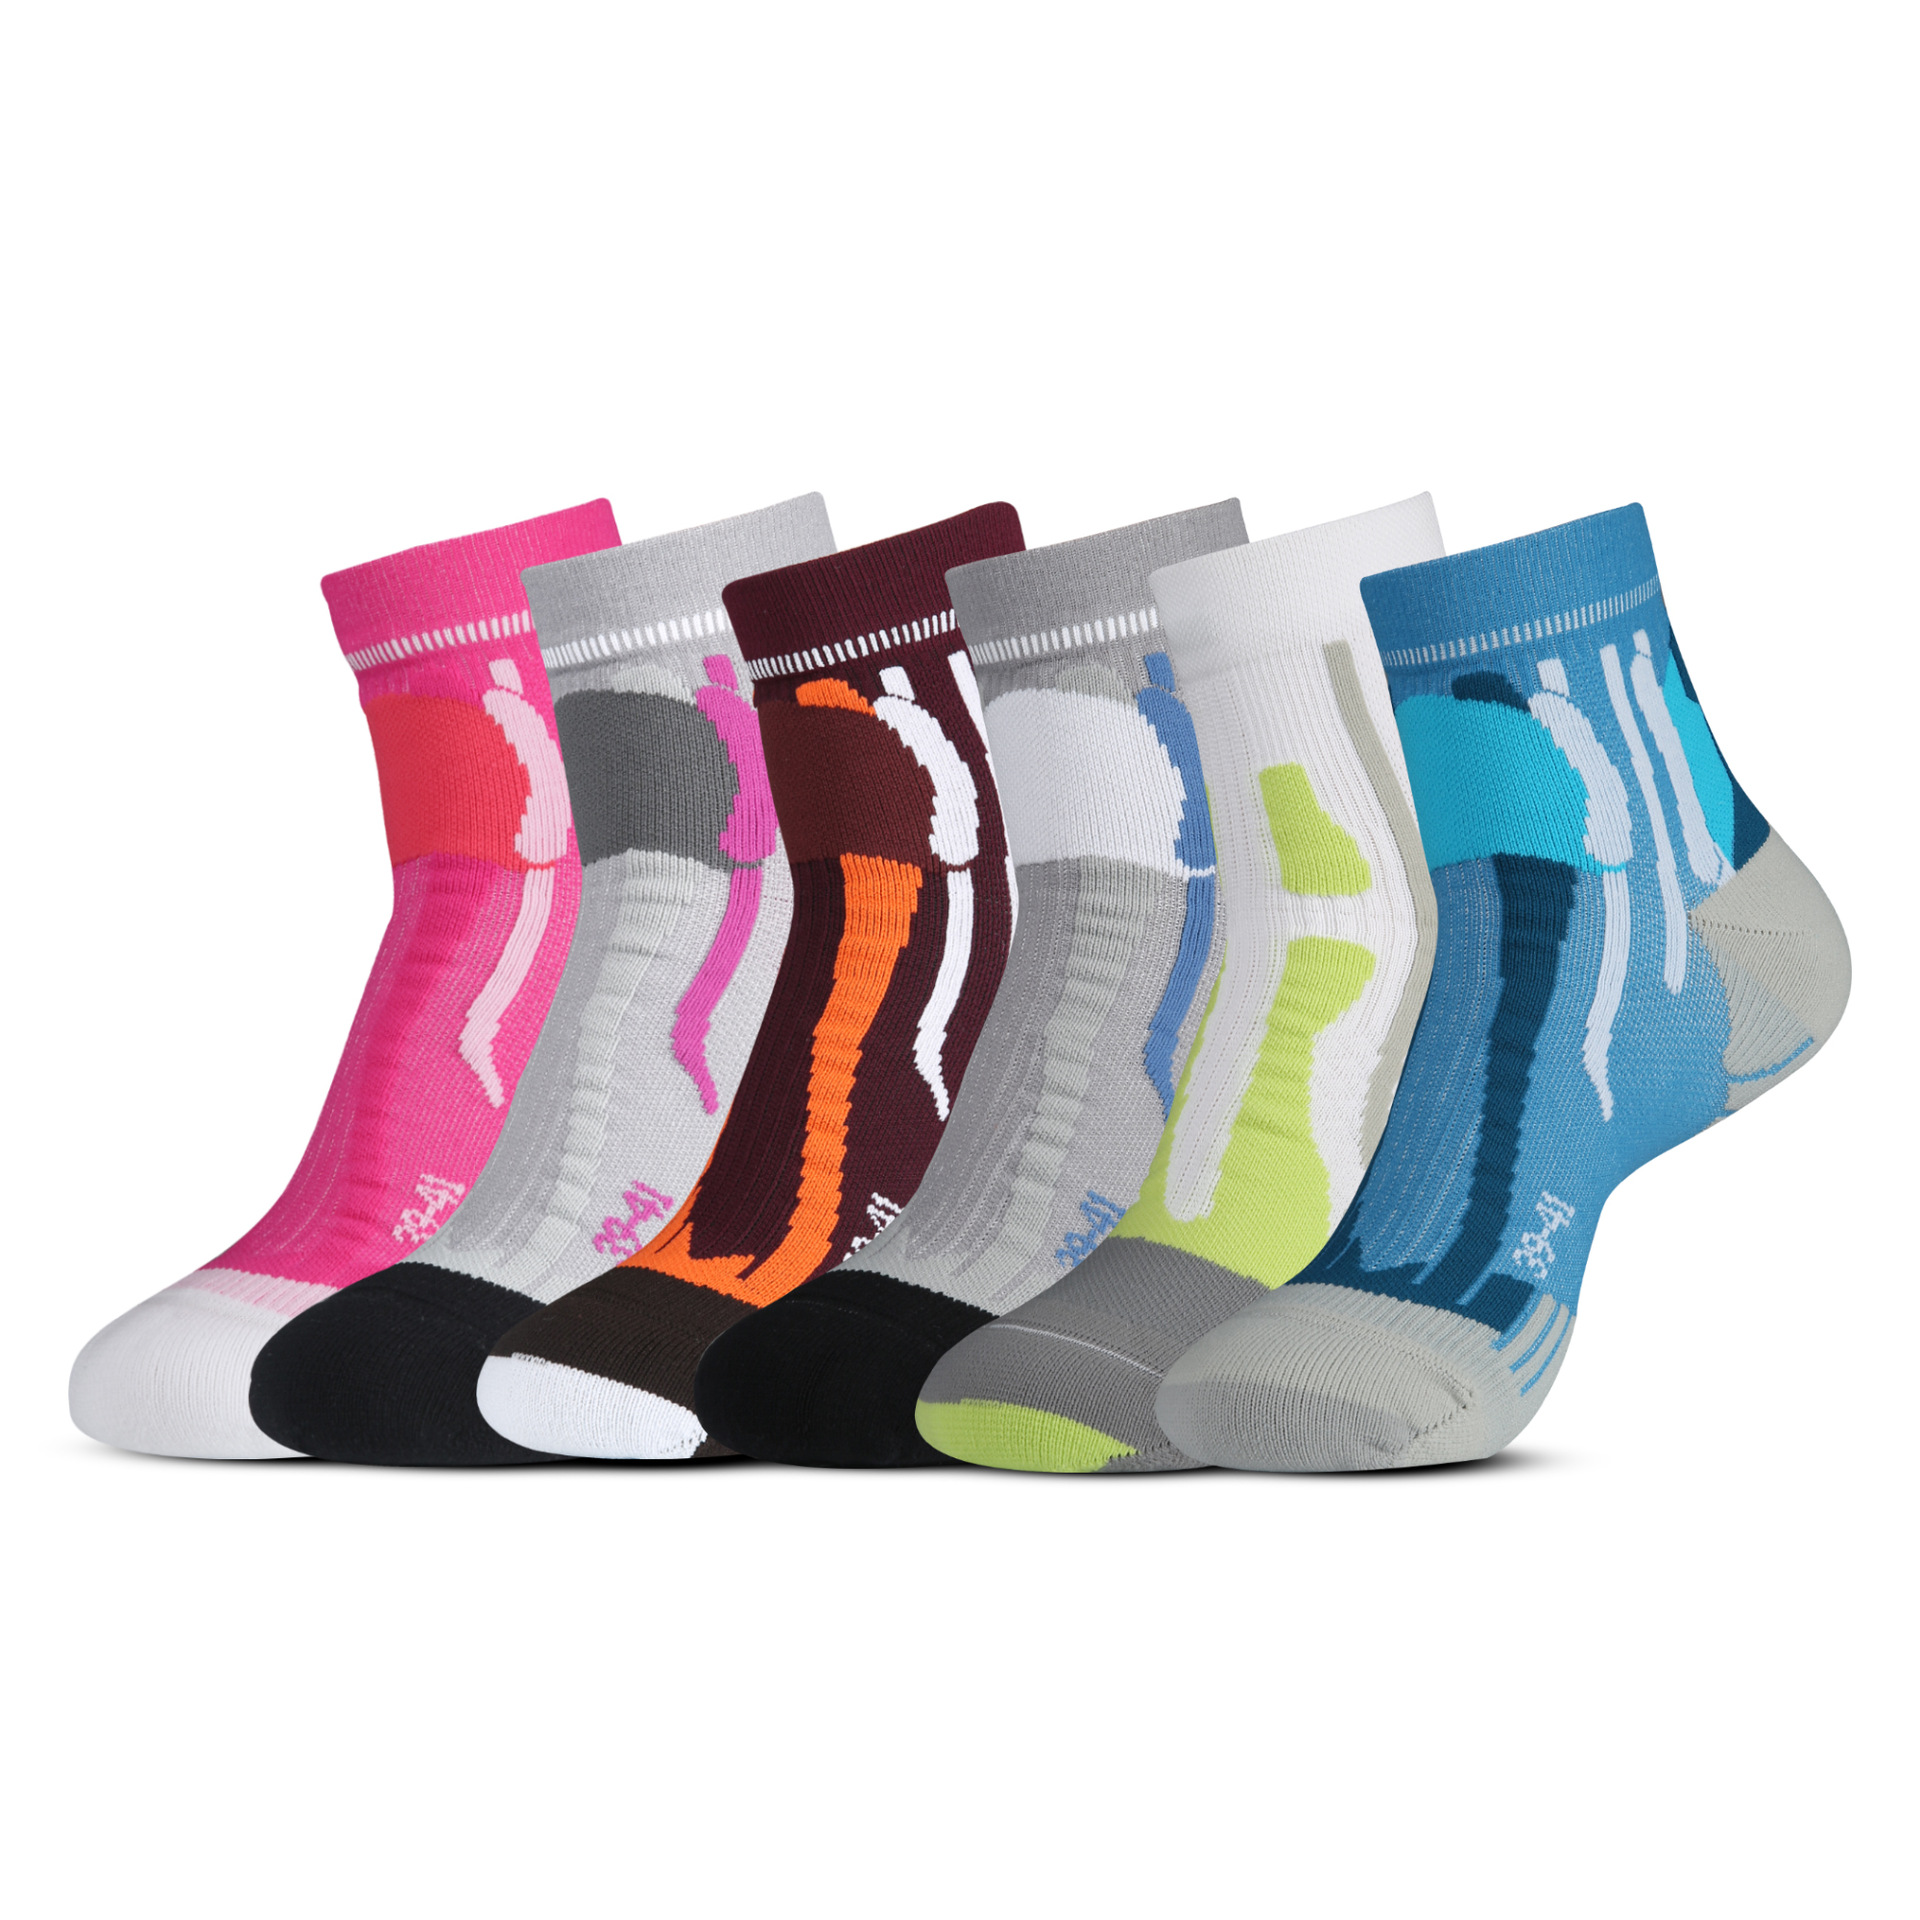 Sifot sports socks (1)